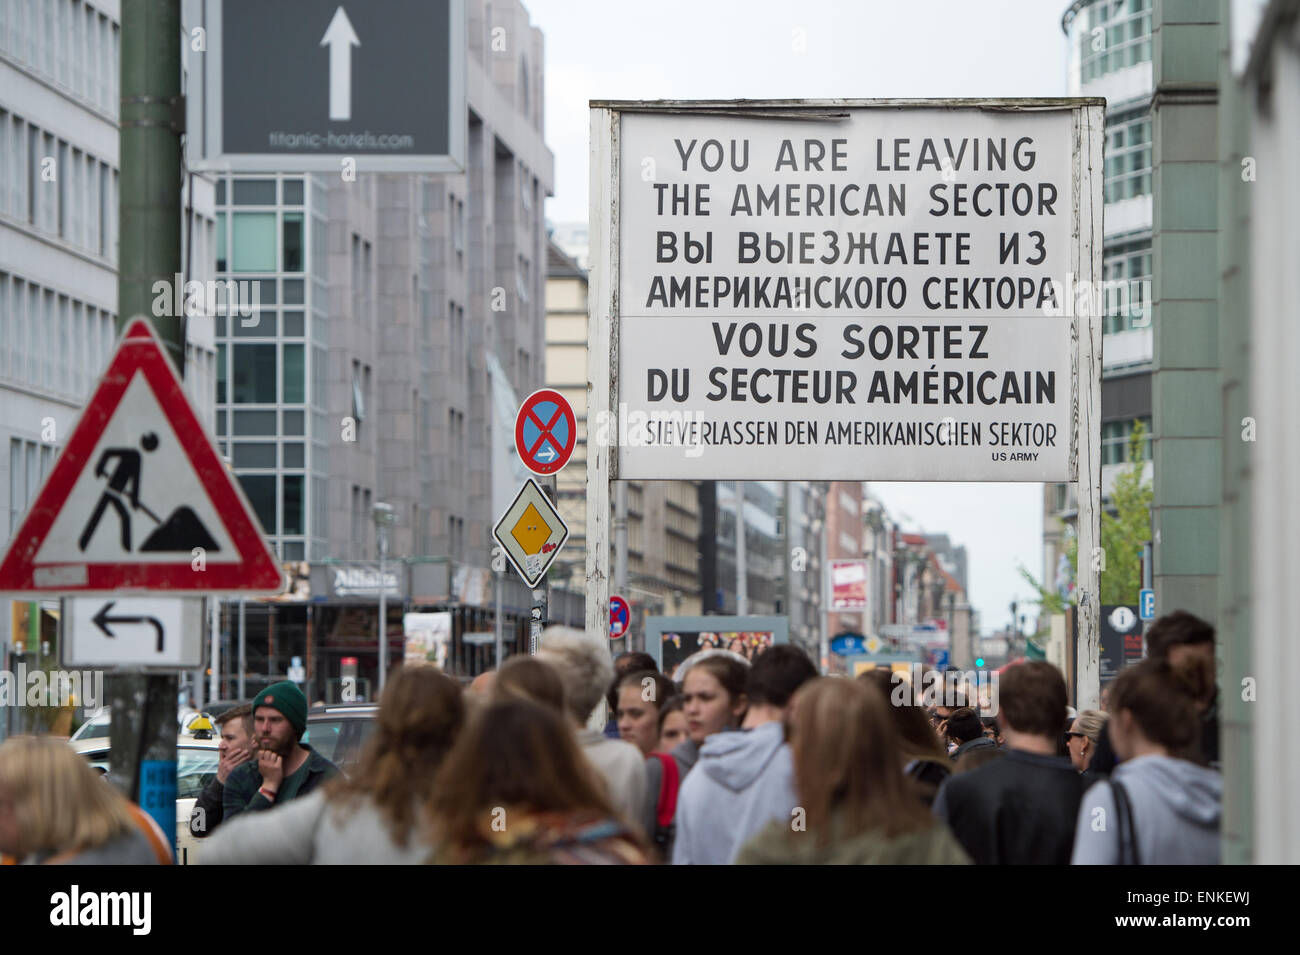 Turisti visitano il Checkpoint Charlie a Berlino, Germania, 07 maggio 2015. Berlino attira milioni di turisti ogni anno. Molti di loro ancora voglia di vedere i resti della prima città divisa - anche 25 anni dopo la riunificazione. Foto: MAURIZIO GAMBARINI/dpa Foto Stock